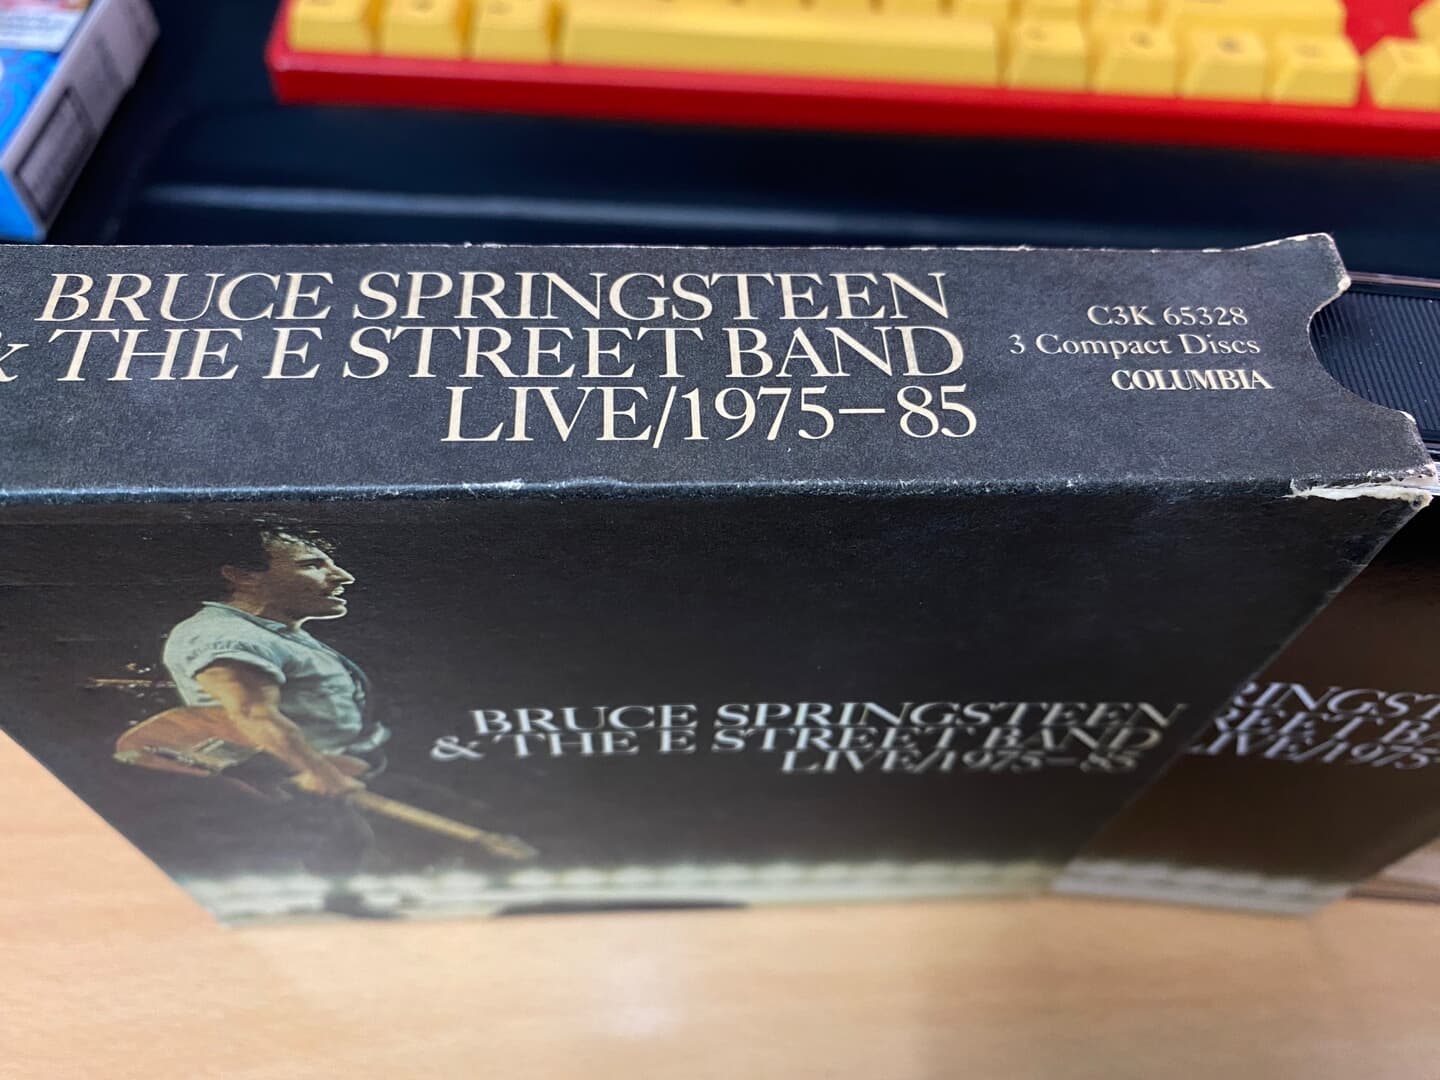 브루스 스프링스틴 & E 스트리트 밴드 - Bruce Springsteen & The E Street Band - Live 1975-85 3Cds [U.S발매]